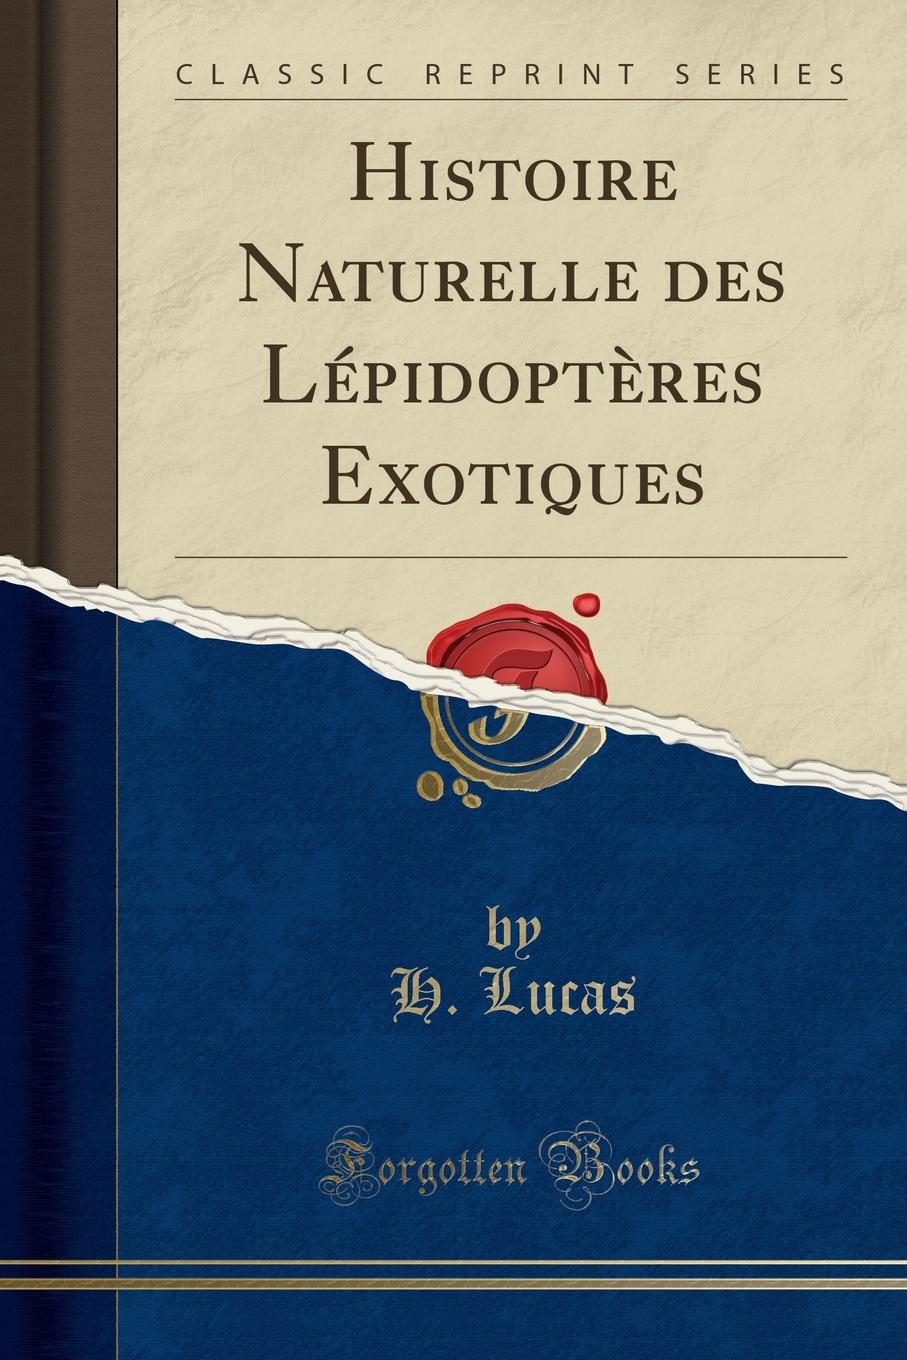 Histoire Naturelle des Lepidopteres Exotiques (Classic Reprint)